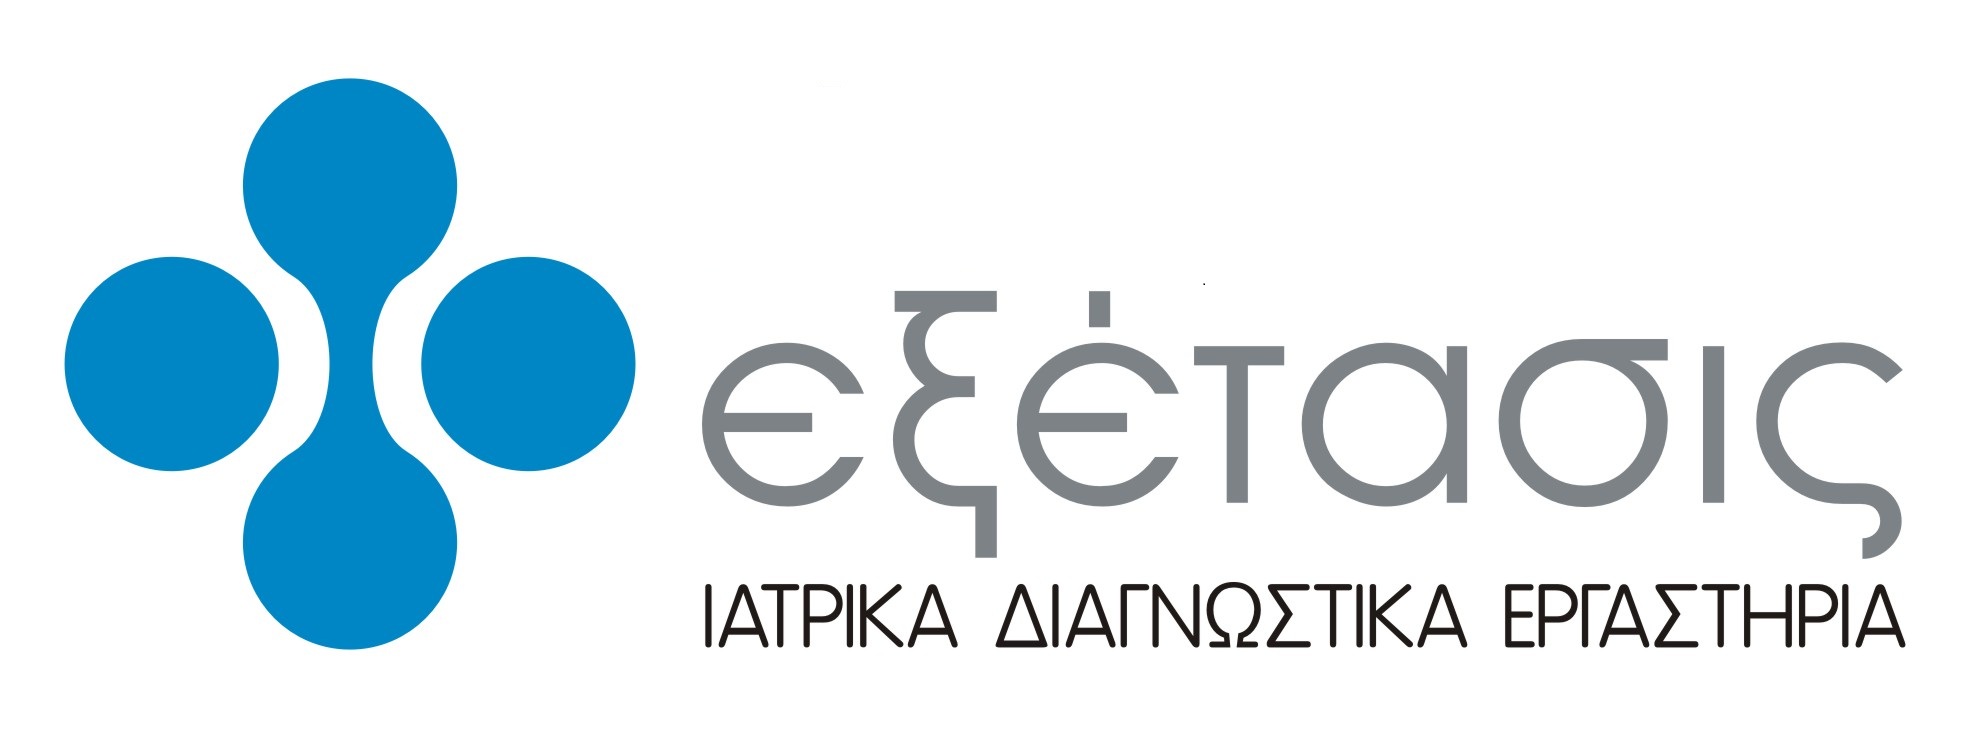 exetasis_logo